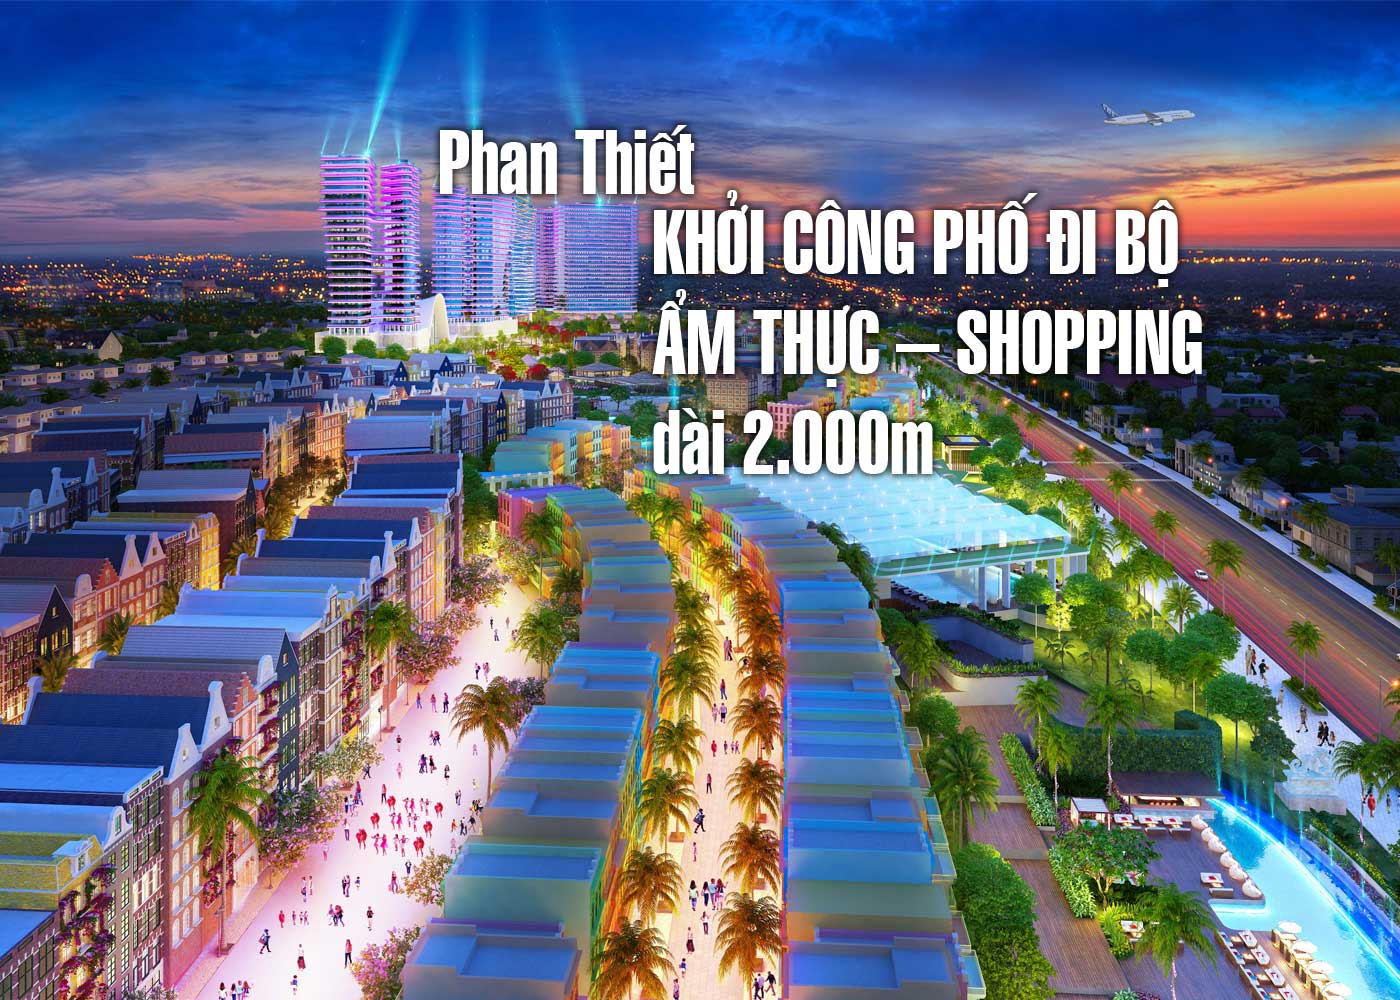 Phan Thiết khởi công phố đi bộ ẩm thực - shopping dài 2.000m - Ảnh 1